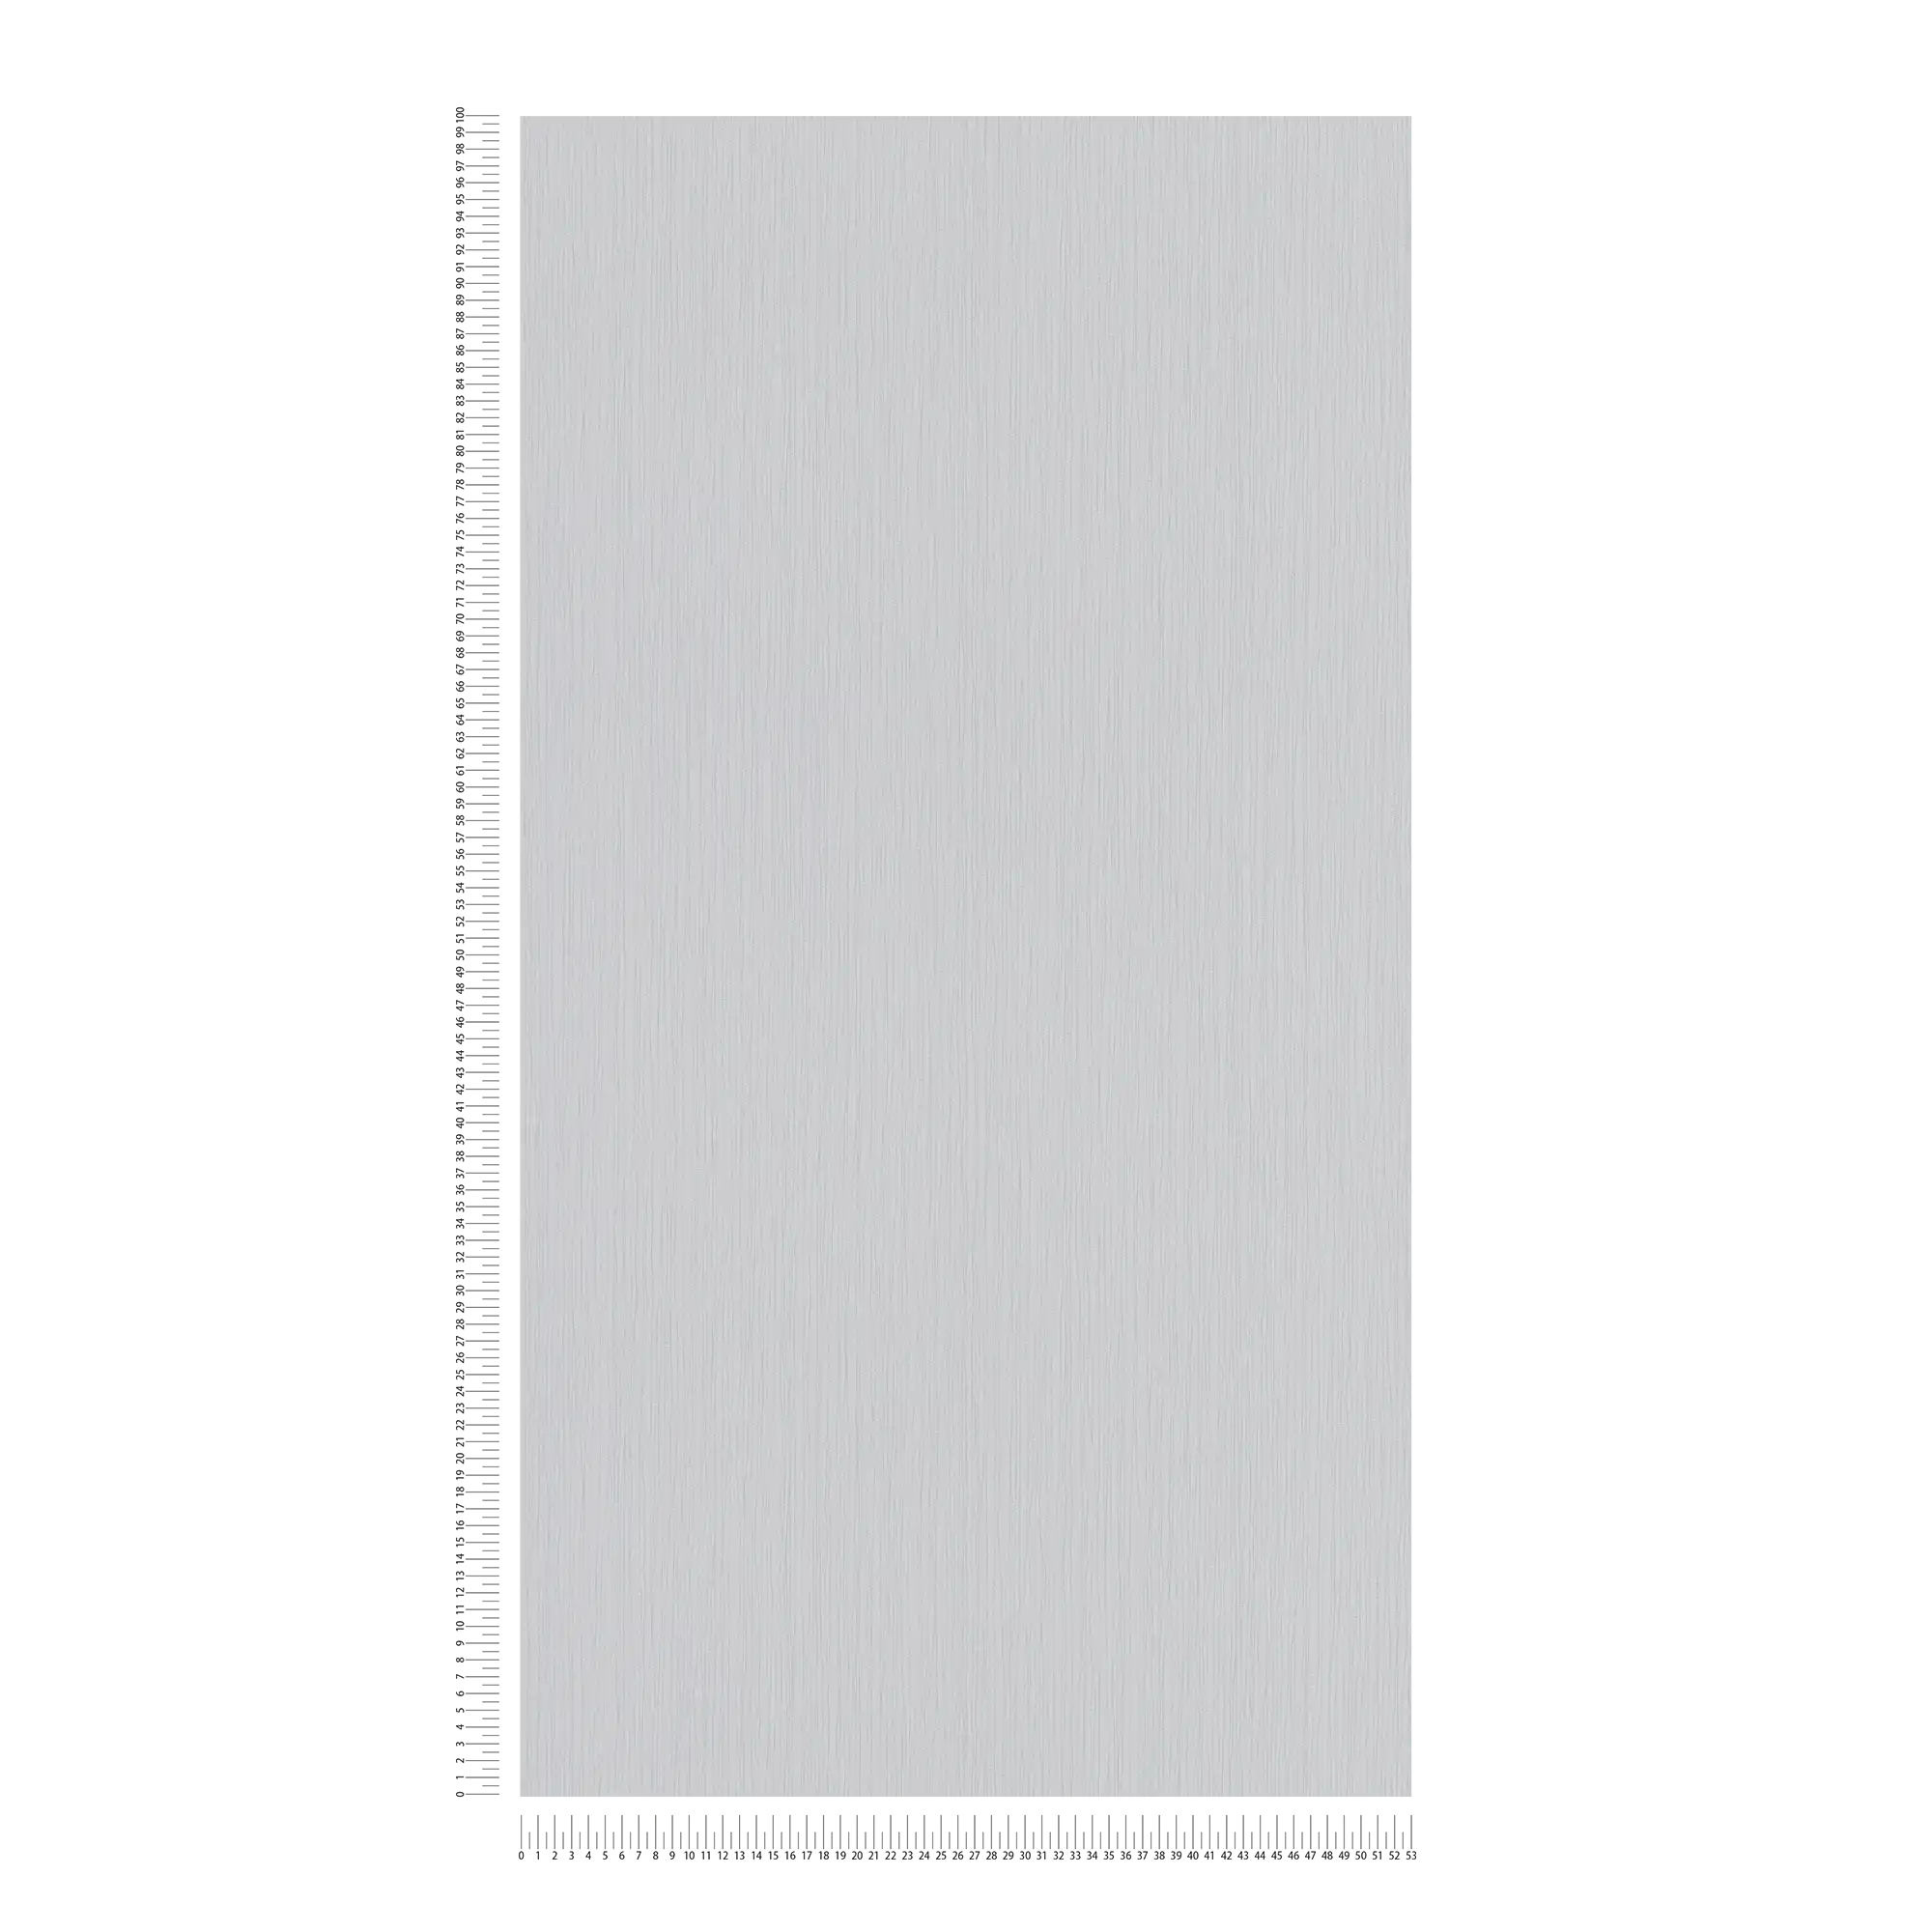             Papel pintado no tejido gris hormigón con sombreado de líneas - gris
        